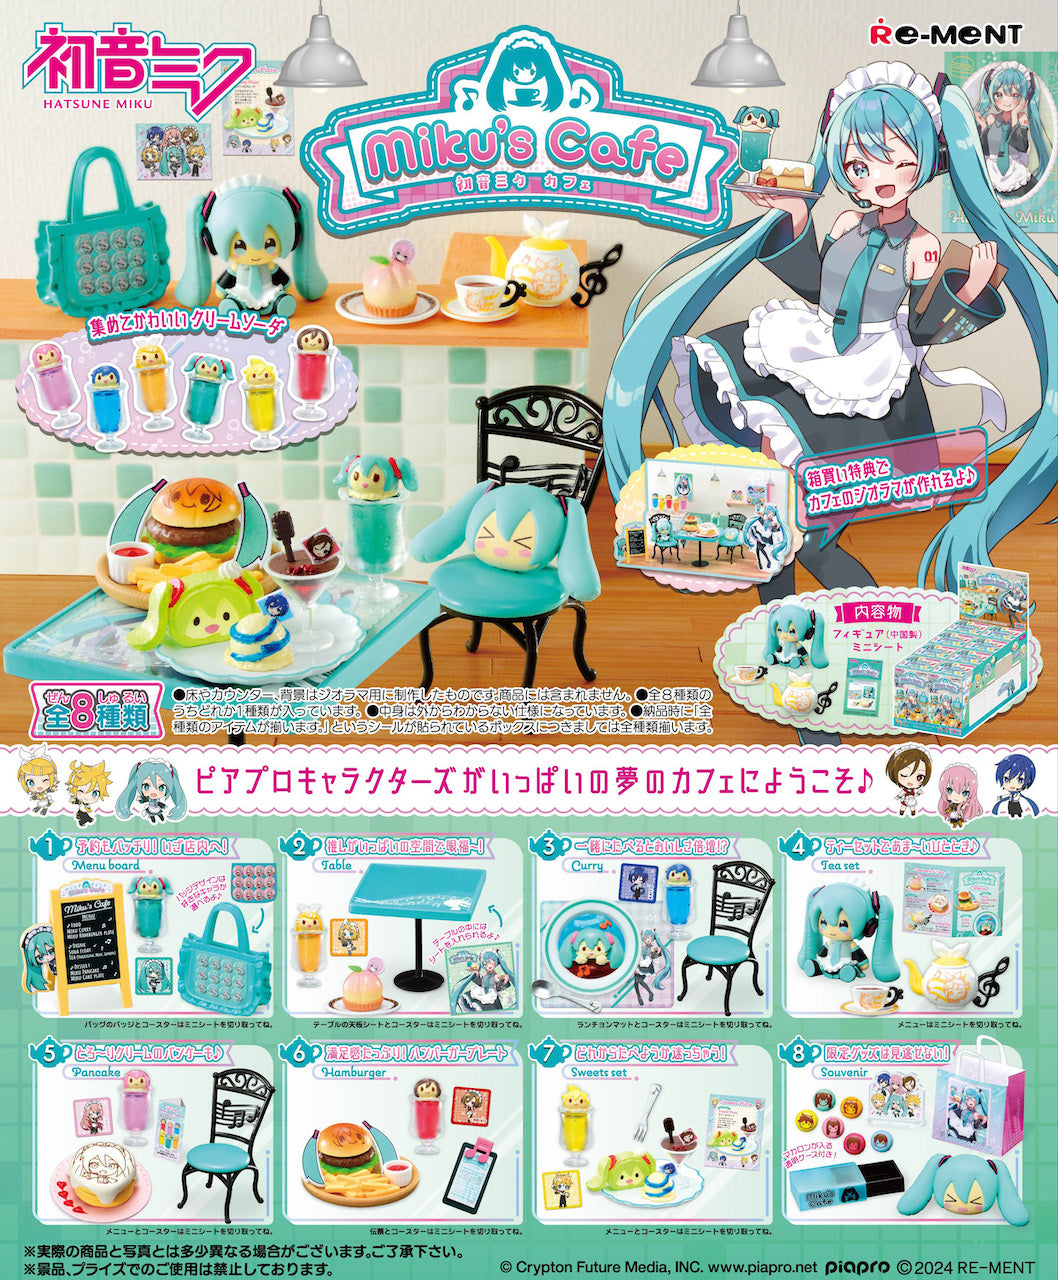 RE-MENT - Vocaloid - Hatsune Miku's Cafe Miniature Figure Blind Box